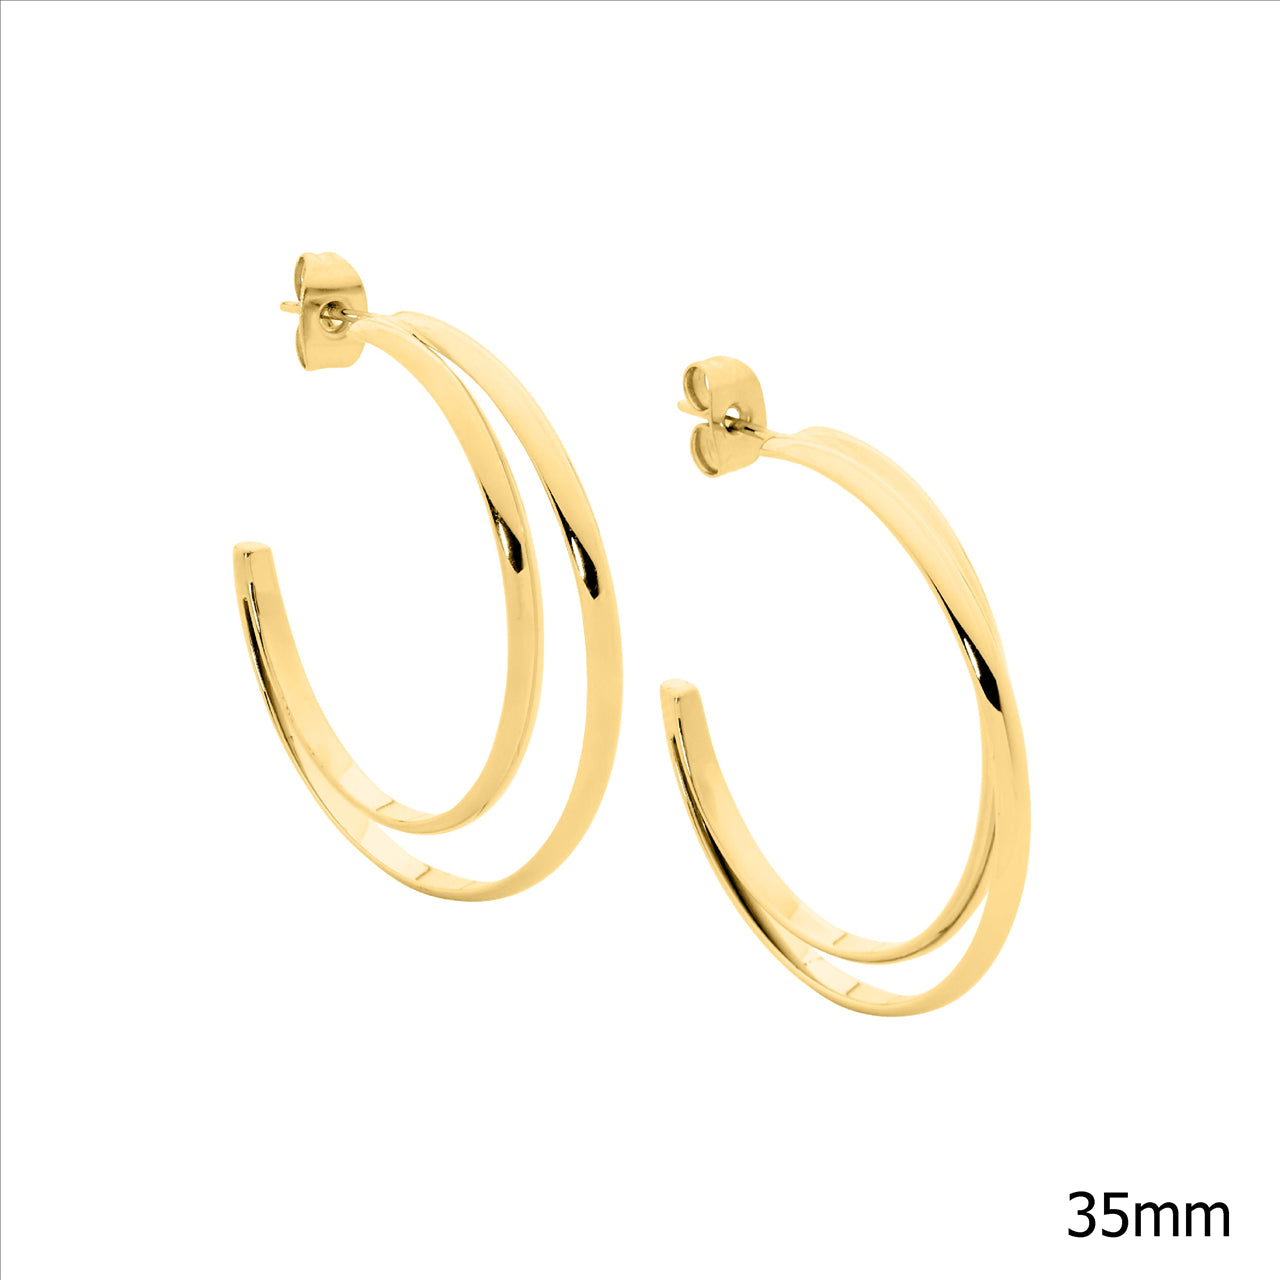 Stainless steel 35mm double row hoop earrings, gold IP plating